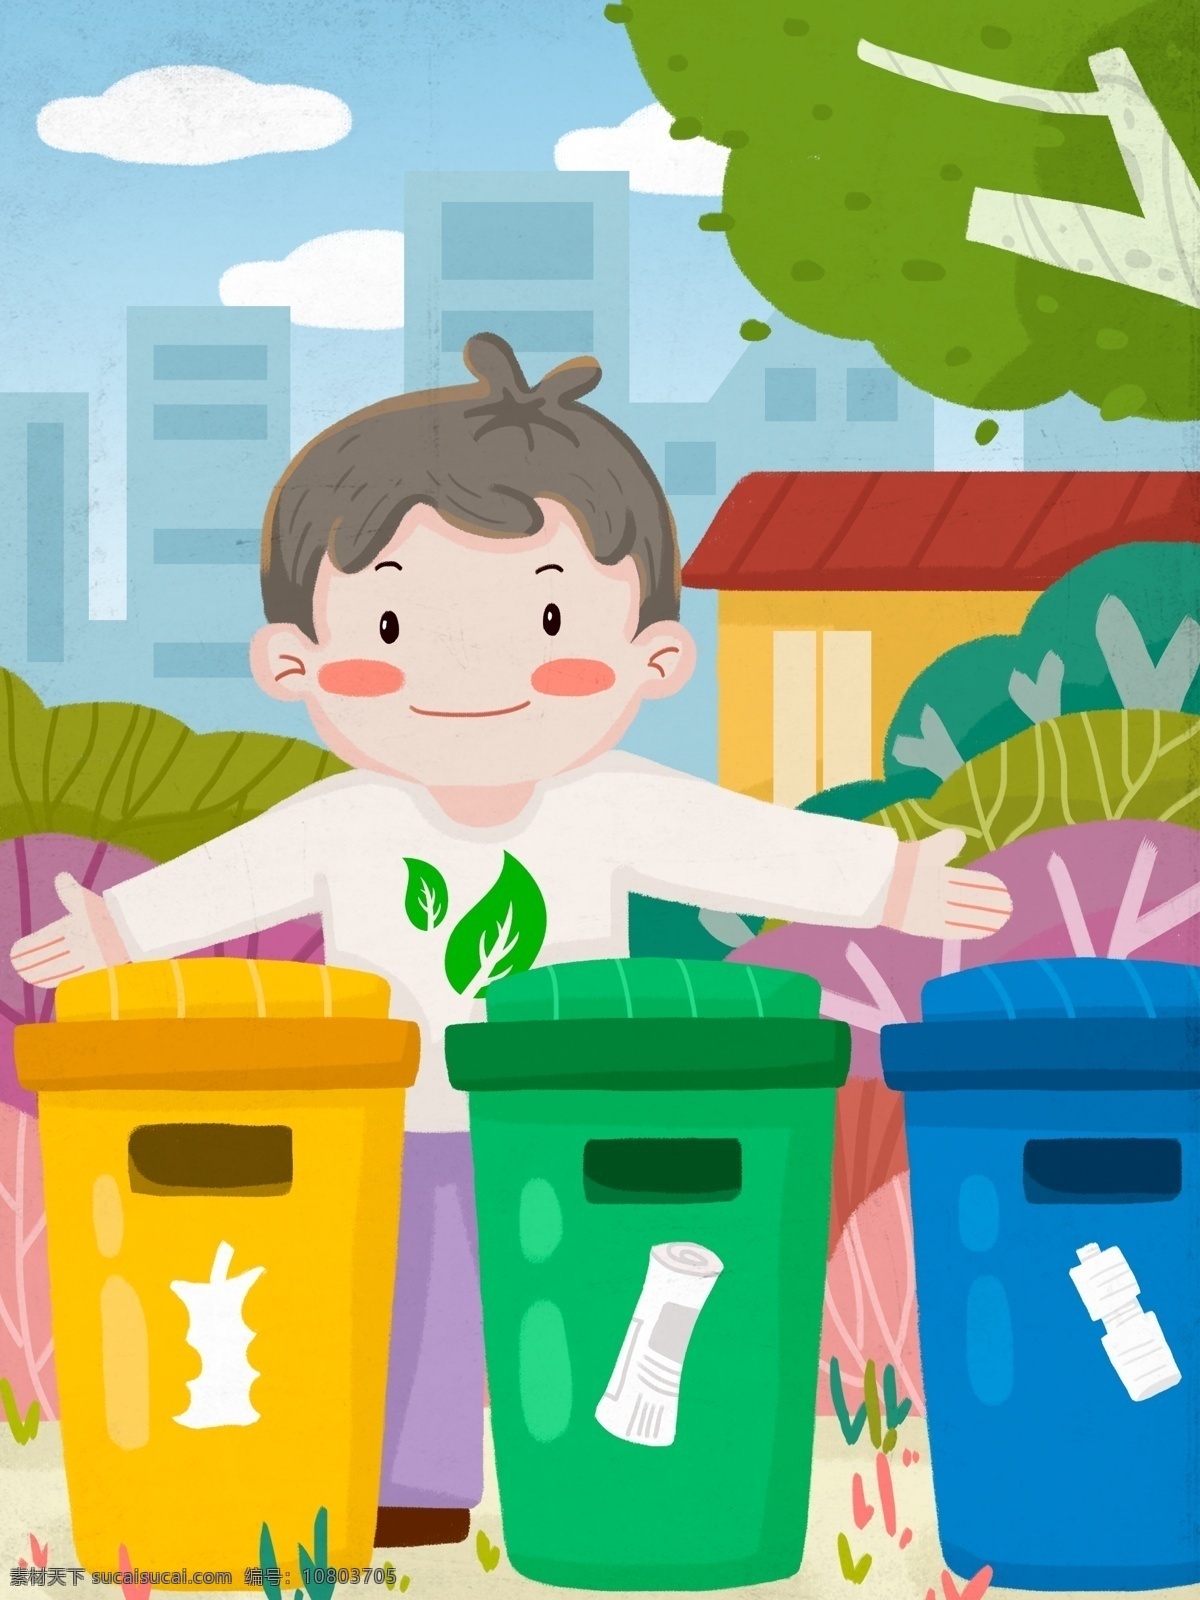 环保 公益 宣传 爱护 环境 垃圾 分类 清洁 城市 垃圾桶 植物 房子 大树 白云 男孩 垃圾分类